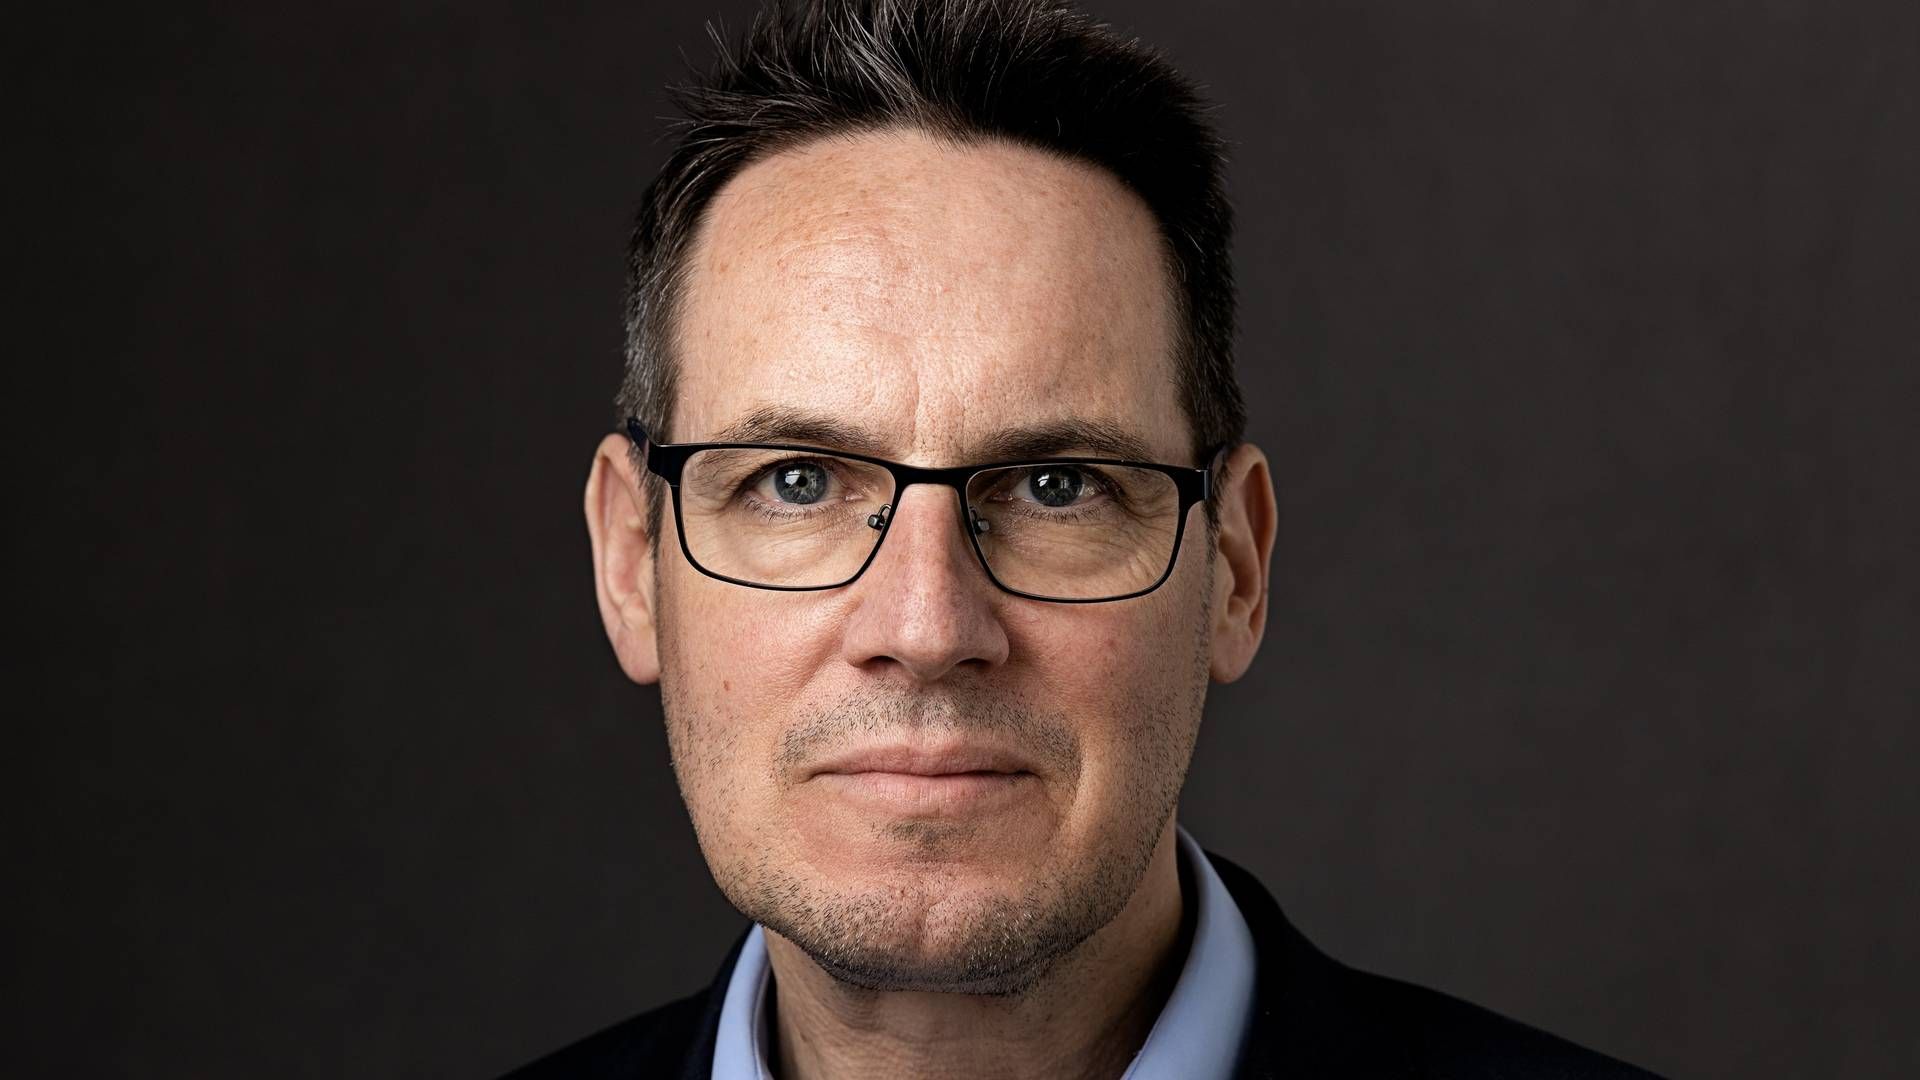 DAGLIG LEDER: Thomas Nordgård er daglig leder i Hald & Co. Han har vært i firmaet siden 2011. | Foto: Mona Hauglid/Advokatfirma Hald